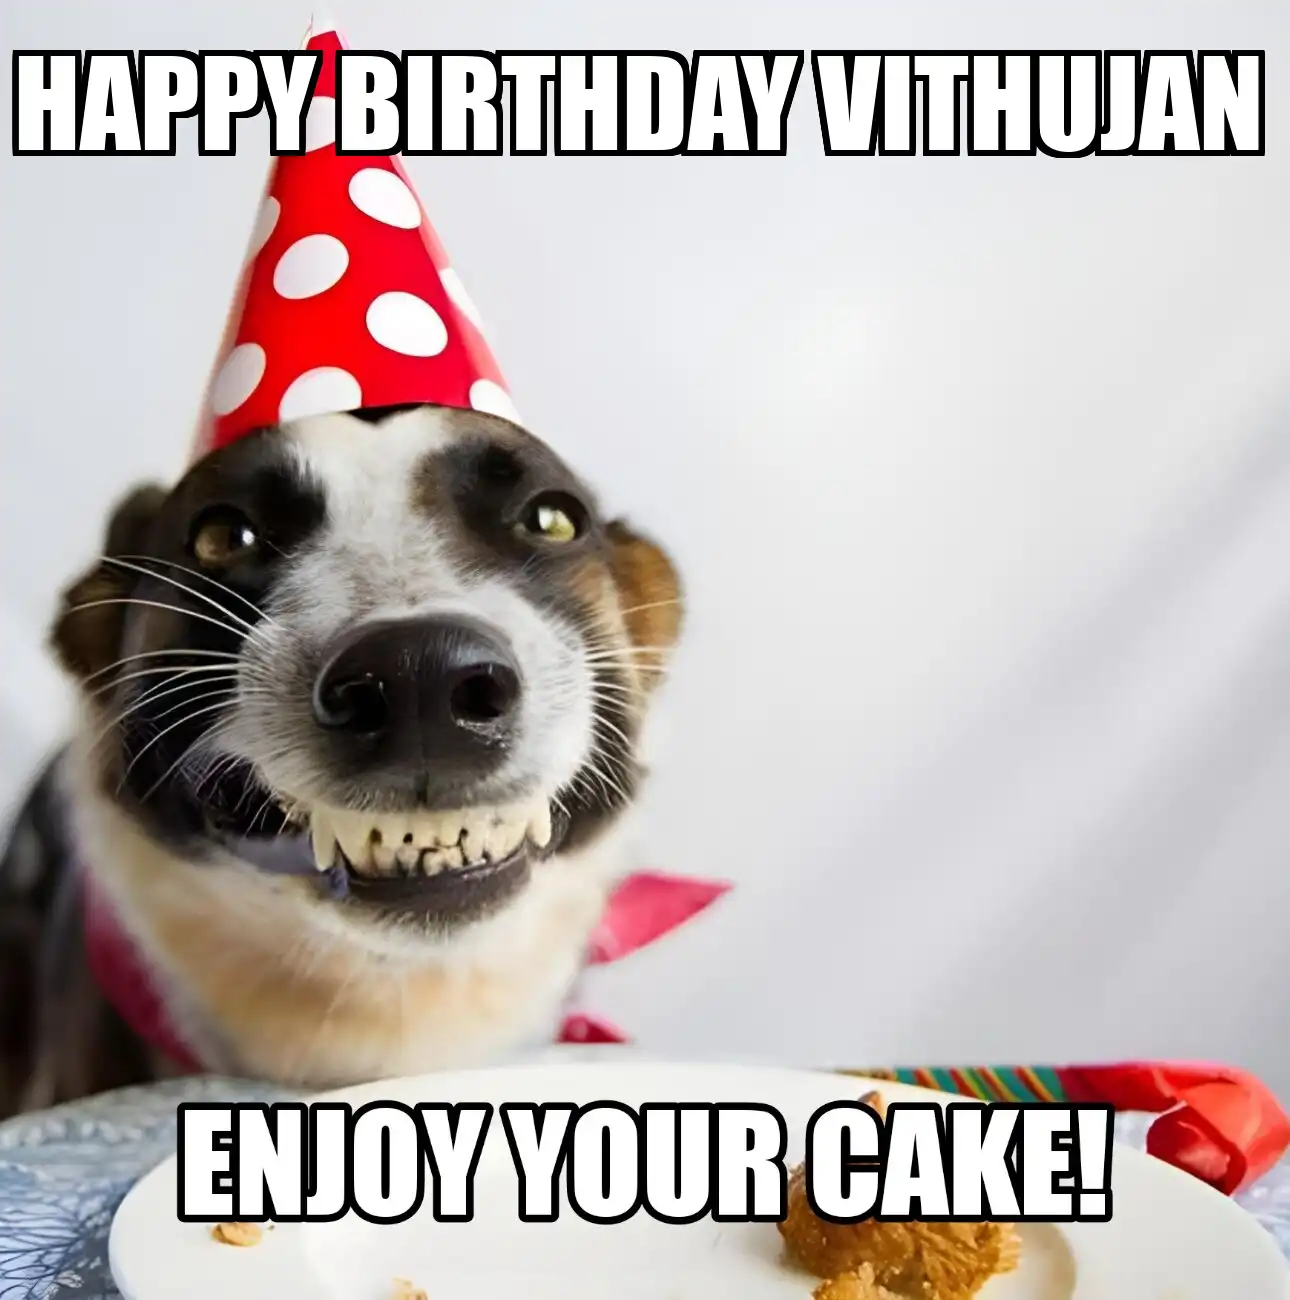 Happy Birthday Vithujan Enjoy Your Cake Dog Meme